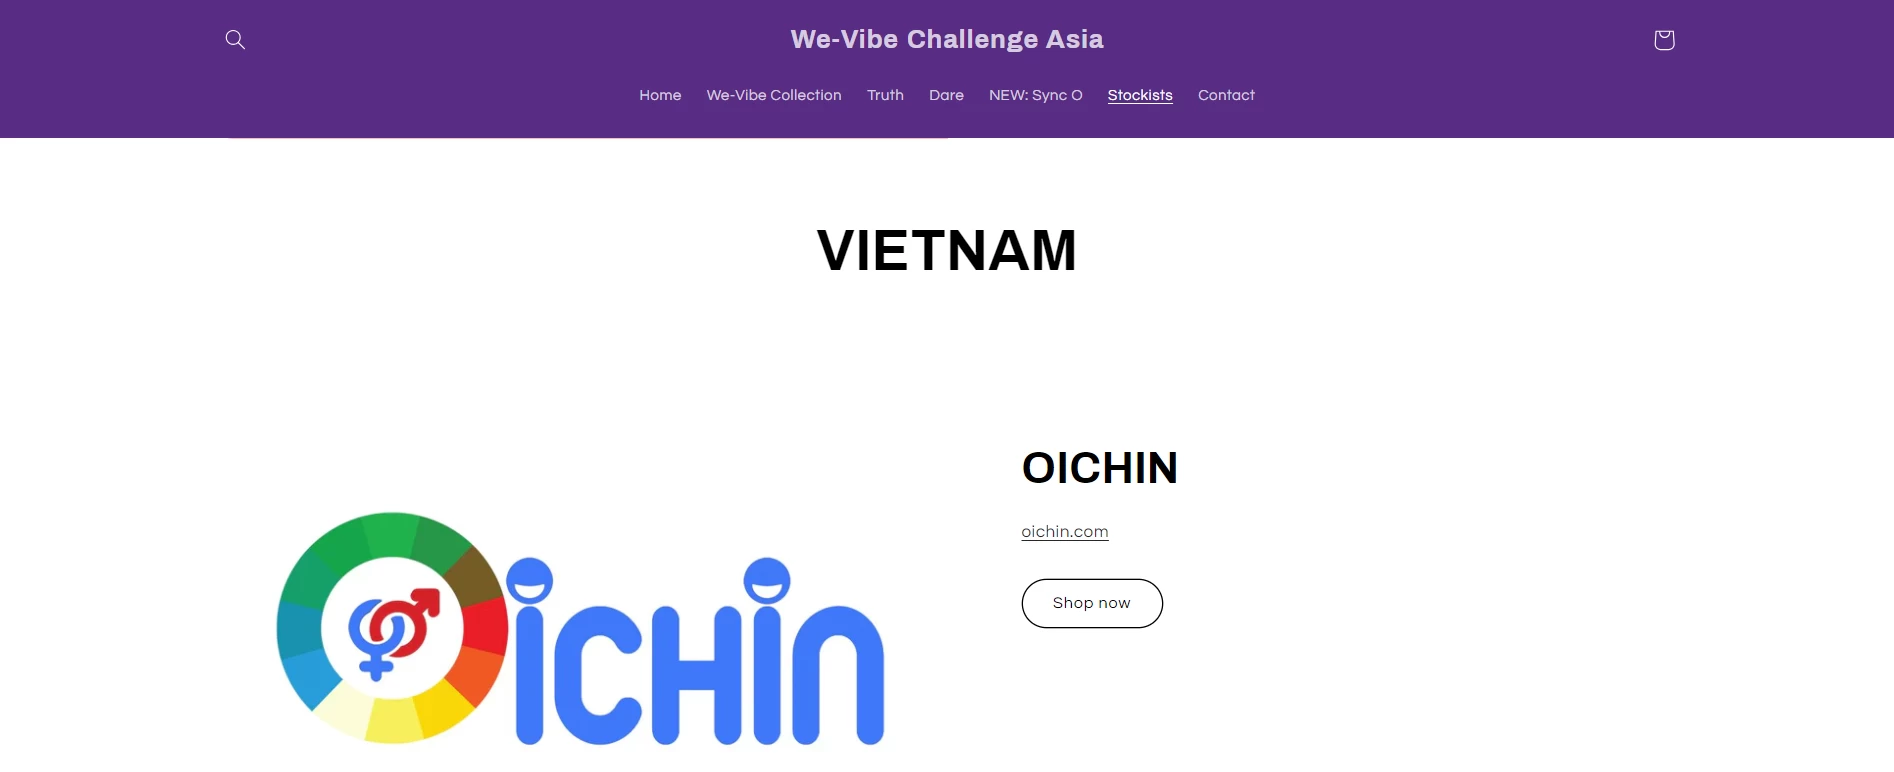 Oichin là đại lý chính hãng của We-vibe tại Việt Nam